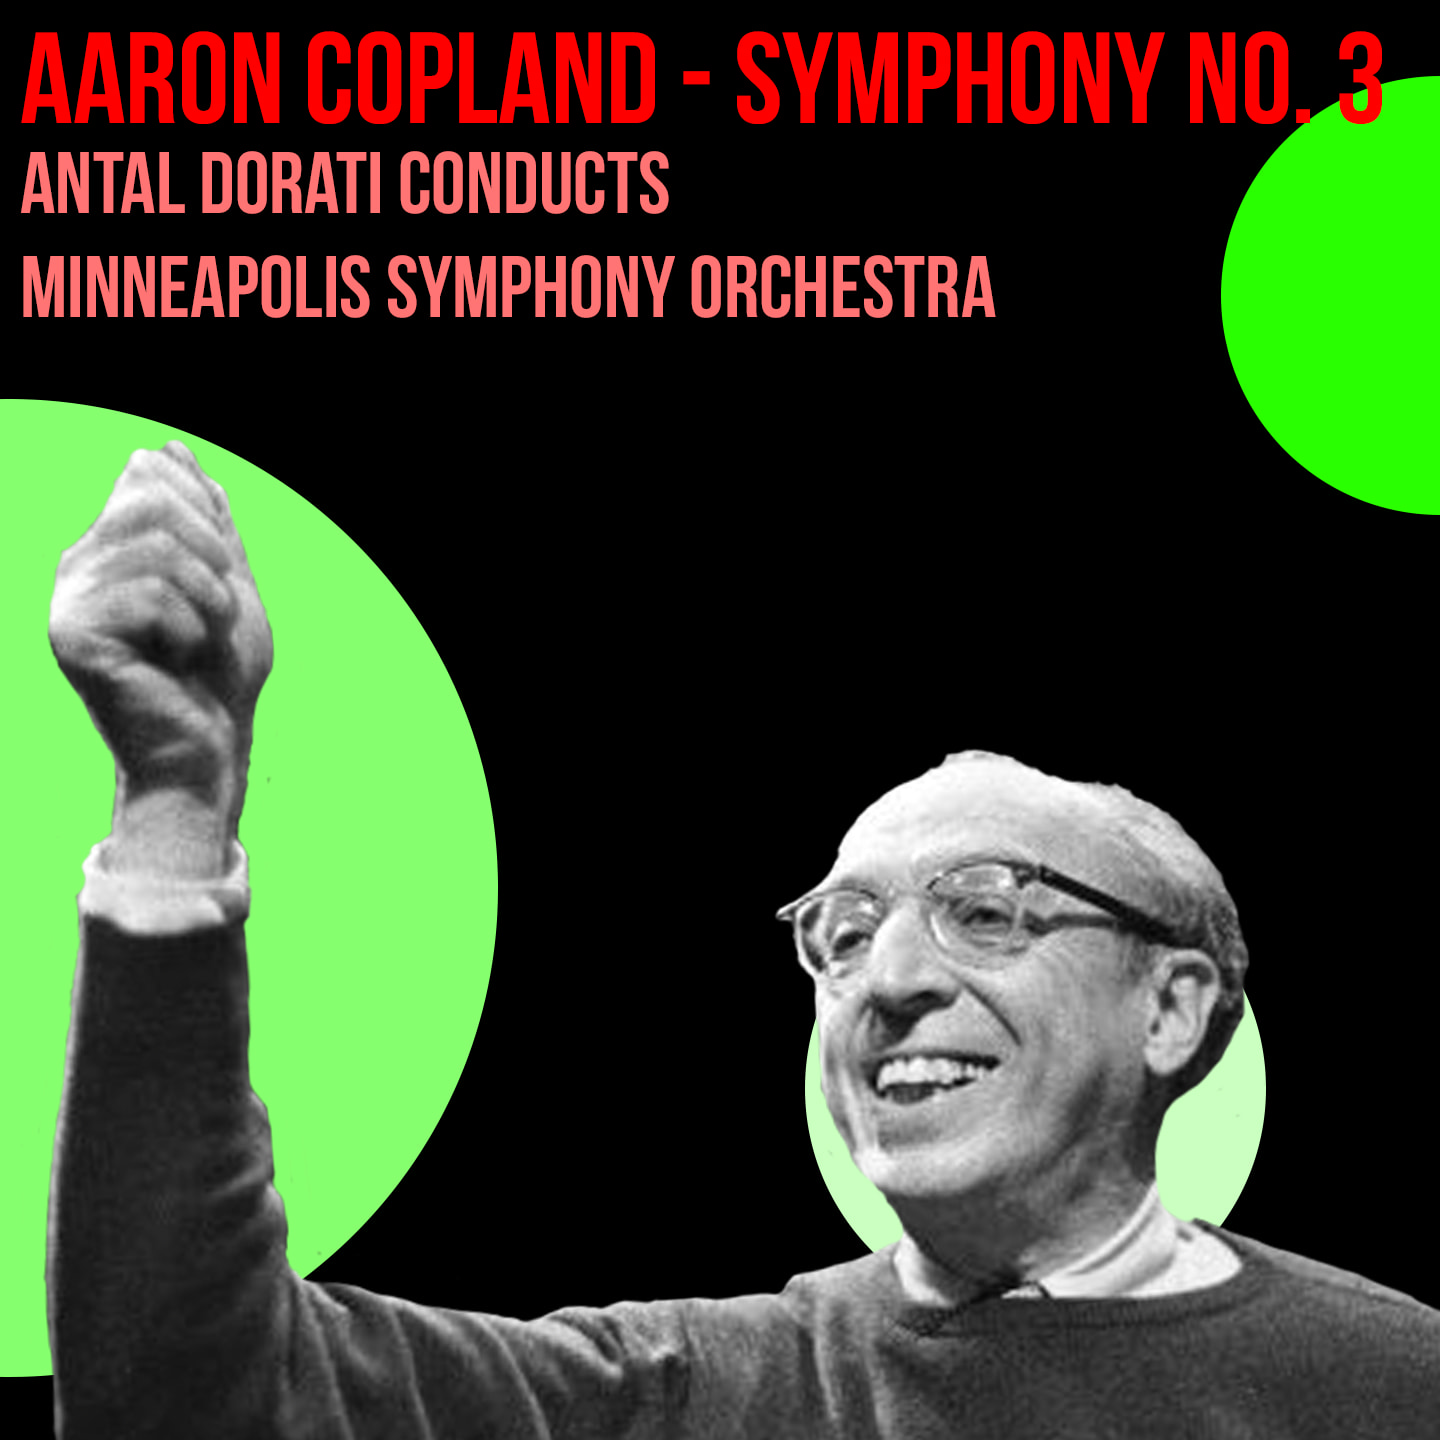 Aaron Copland - Symphony No. 3